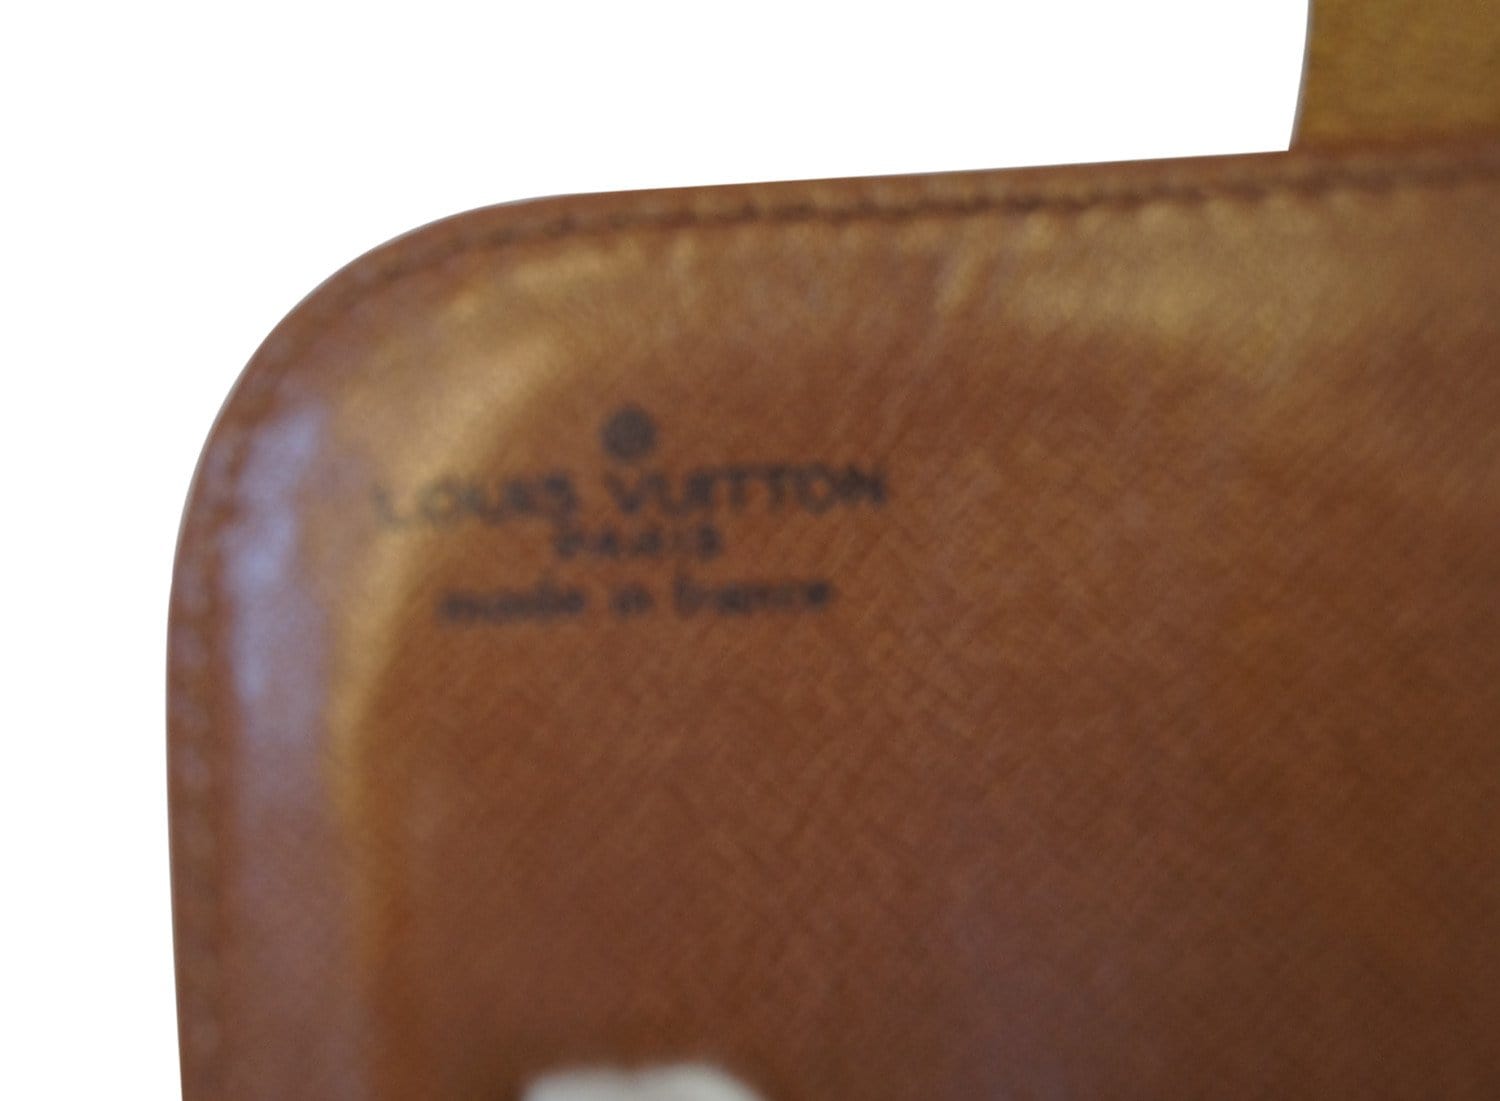 Louis Vuitton Cartouchiere Monogram Leather Crossbody Bag GM – Mint Market